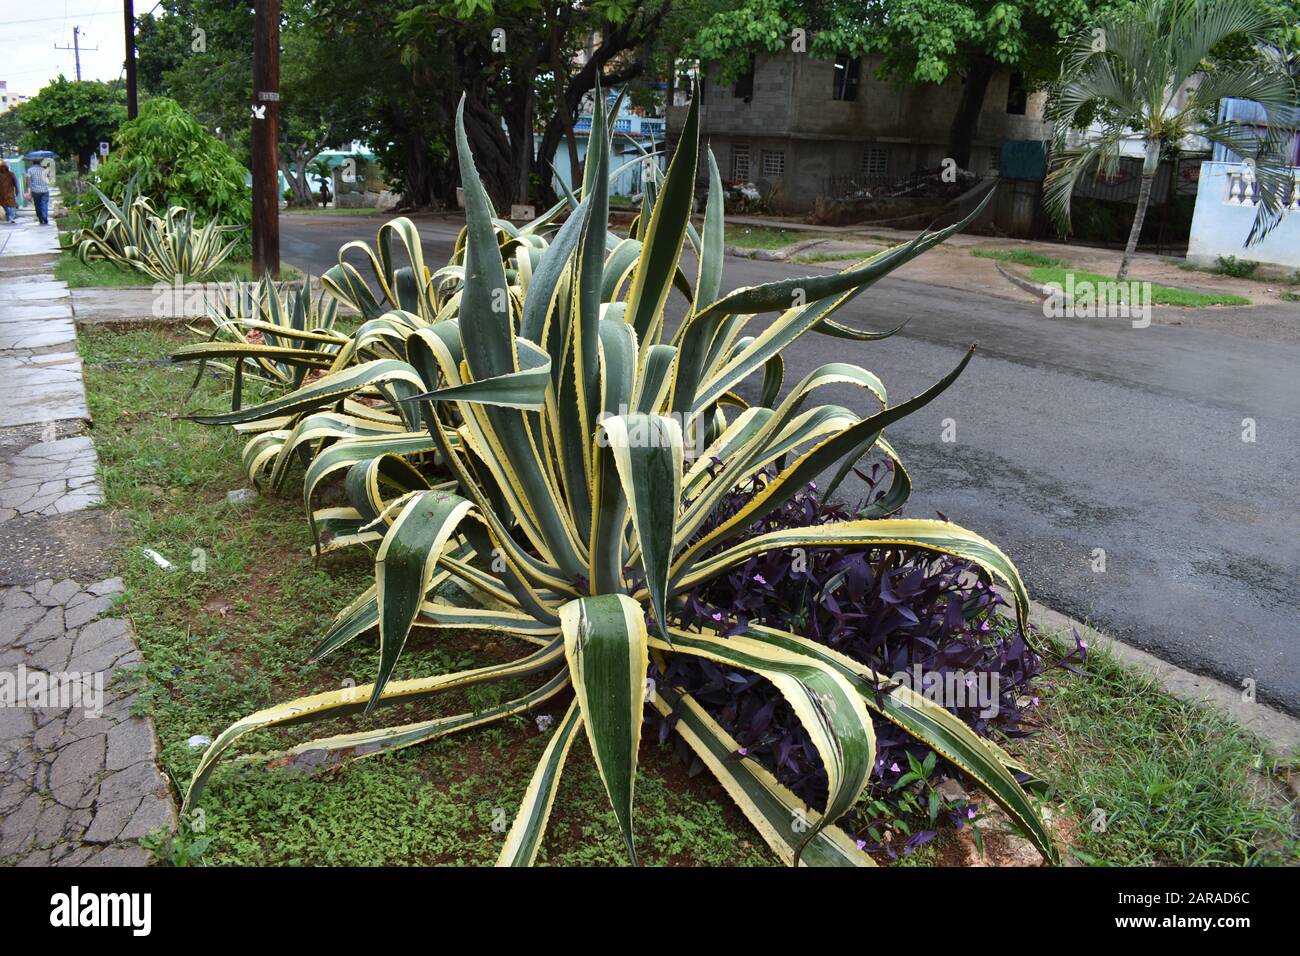 Usine géante d'agave dans les rues de la Havane à Cuba Banque D'Images